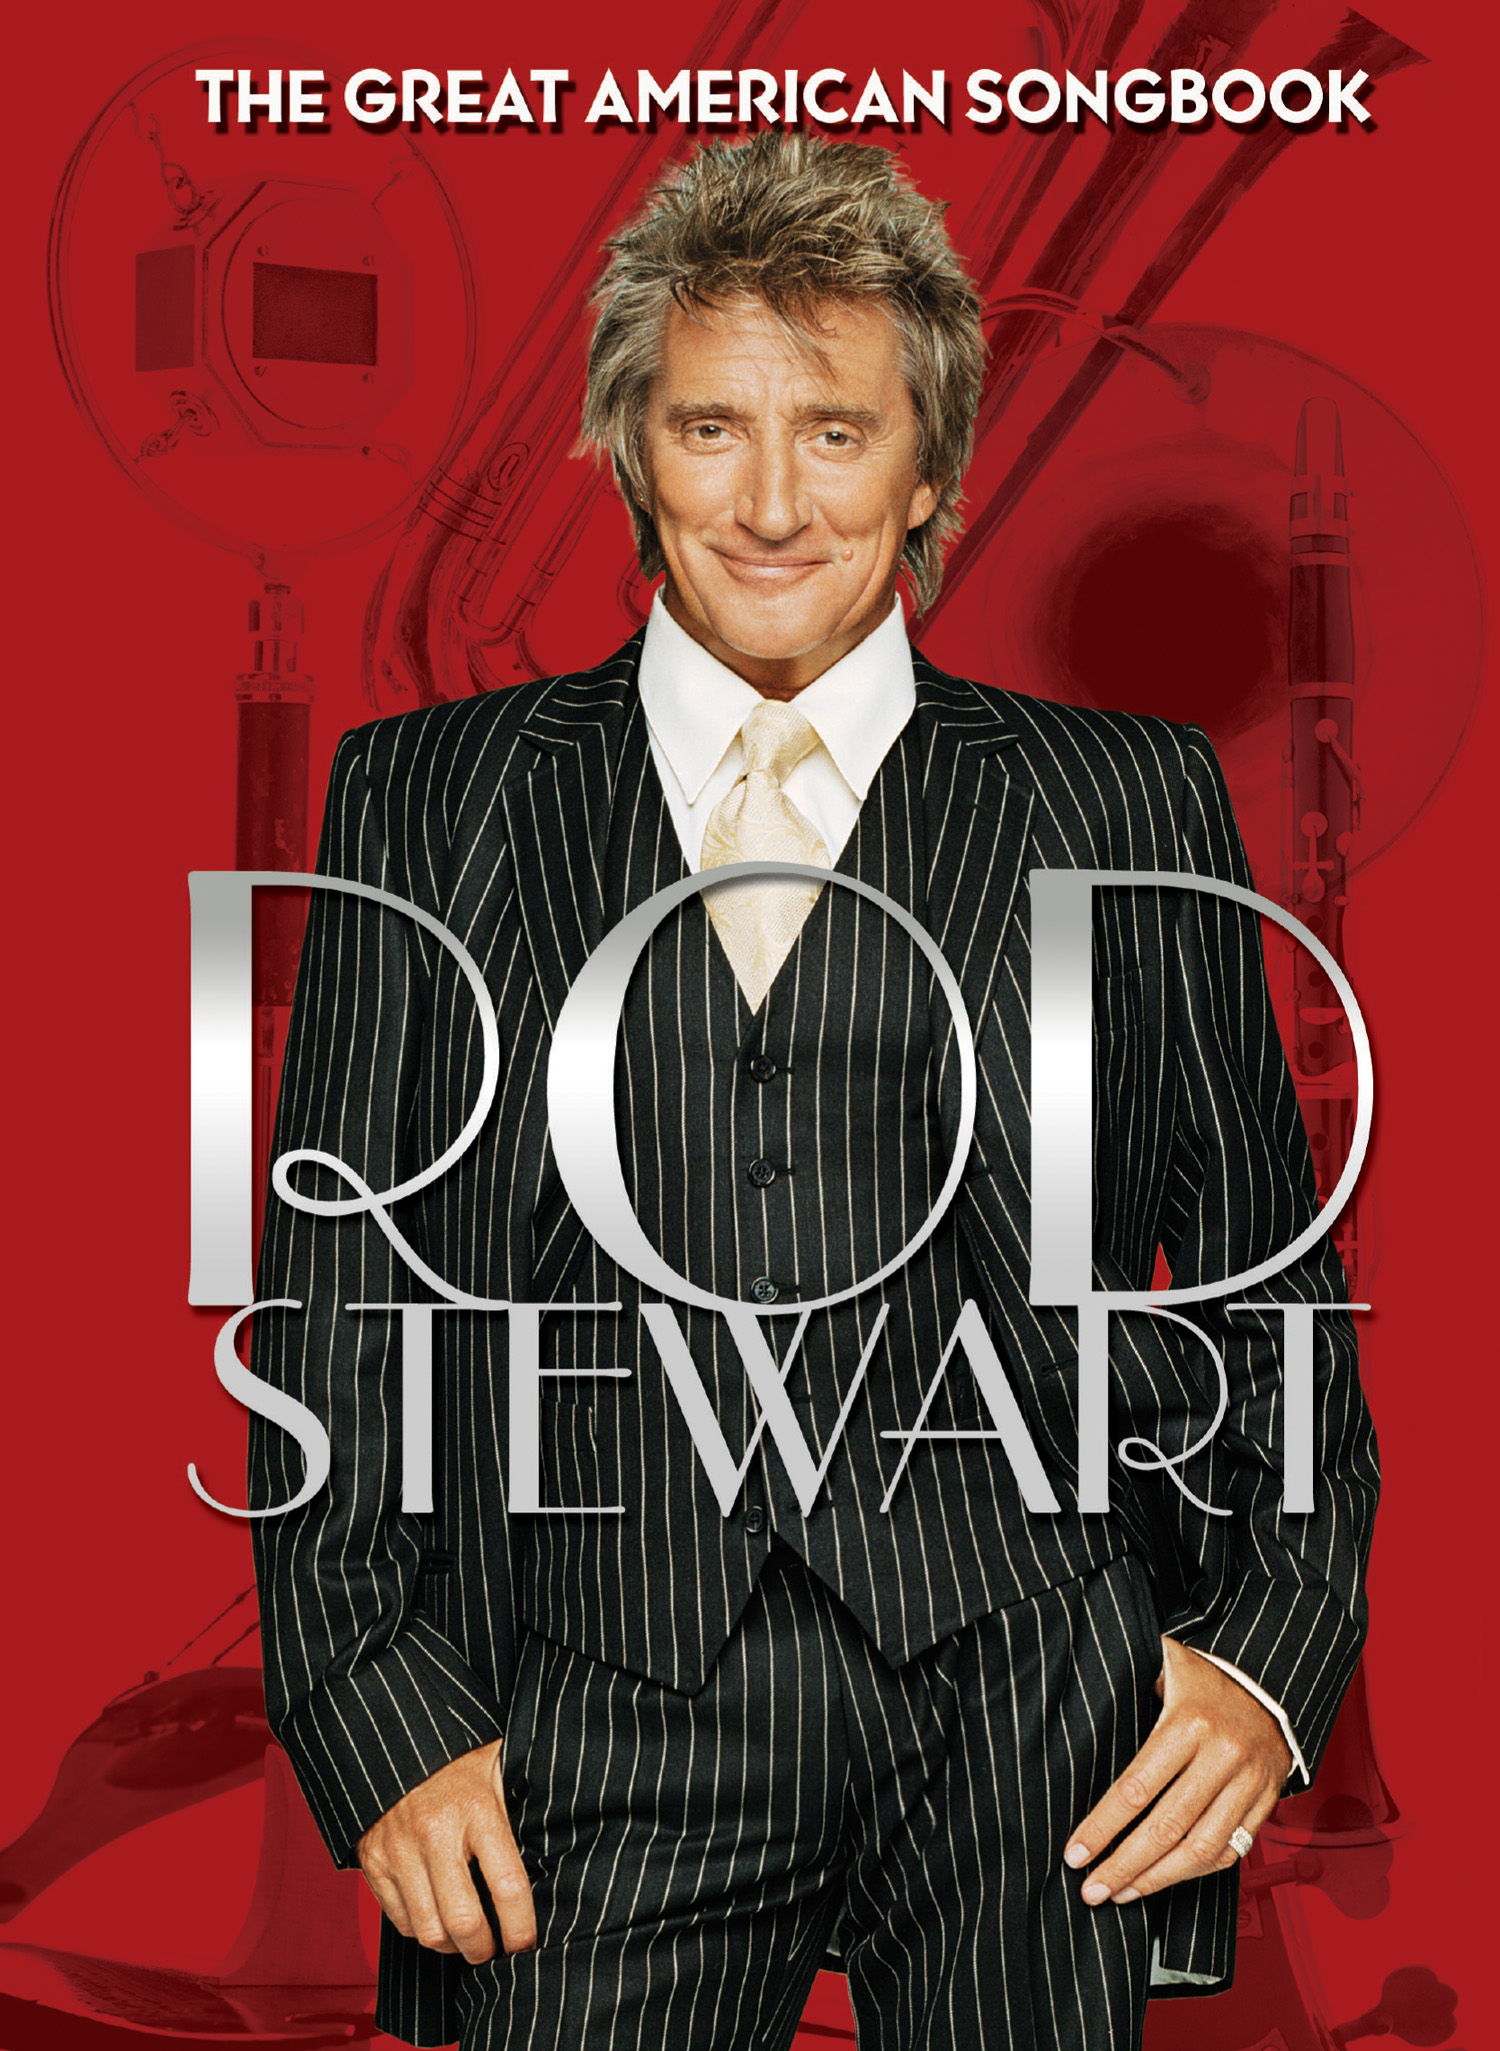 rod stewart great american songbook cd